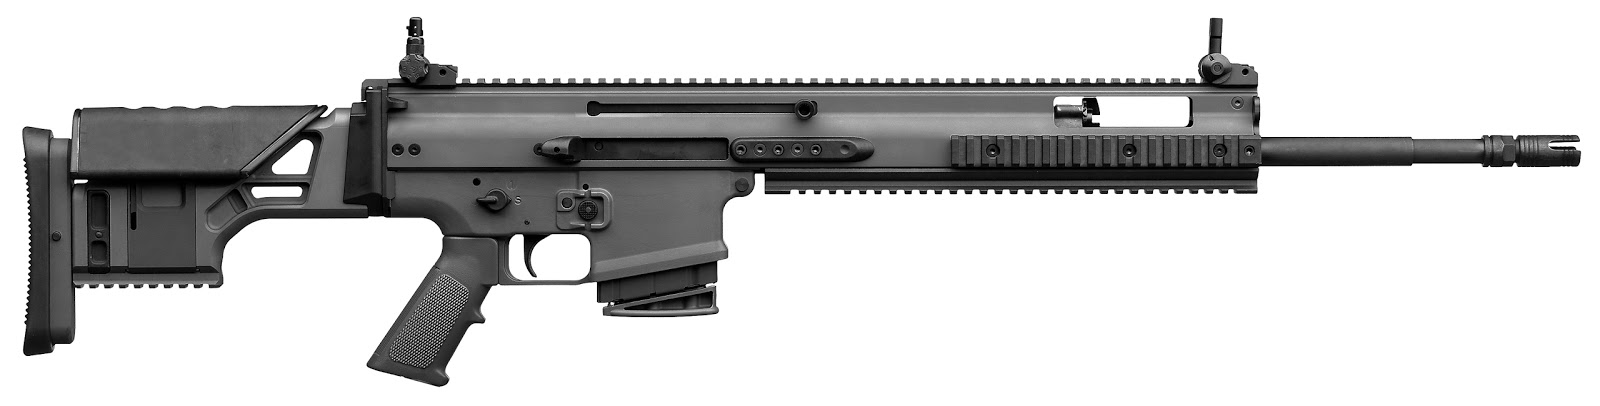 FN_SCAR_H_TPR_Precision_Rifle.jpg